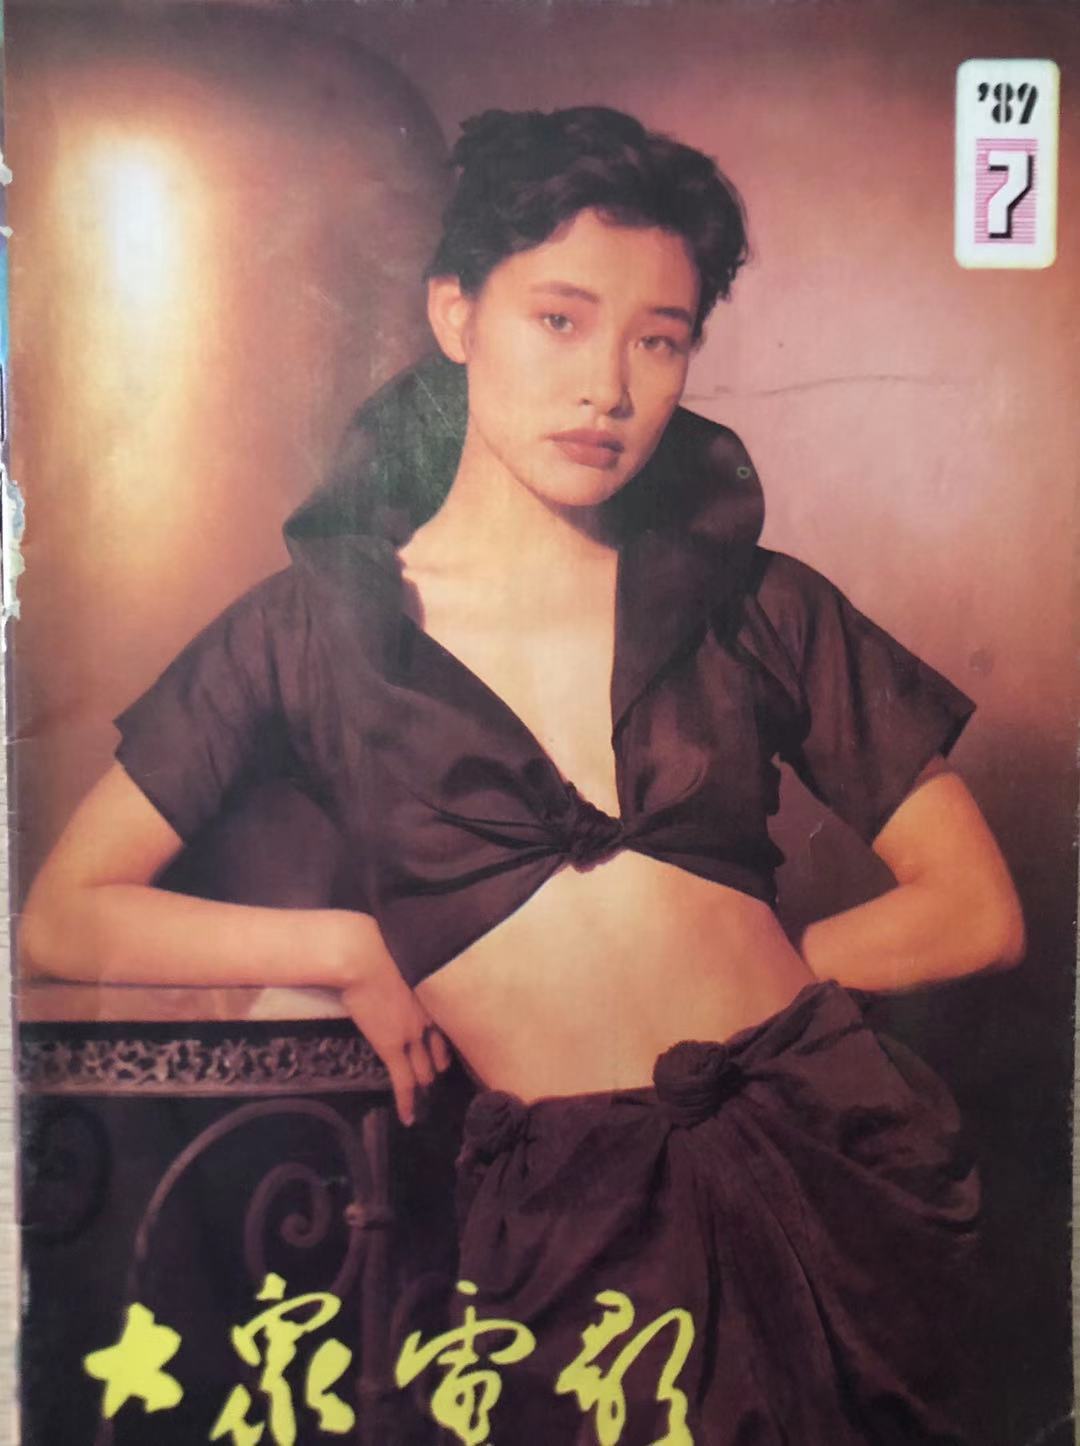 89十年代男明星图片(旧影集—24张大众电影1989年封面和封底带来的的照片故事)